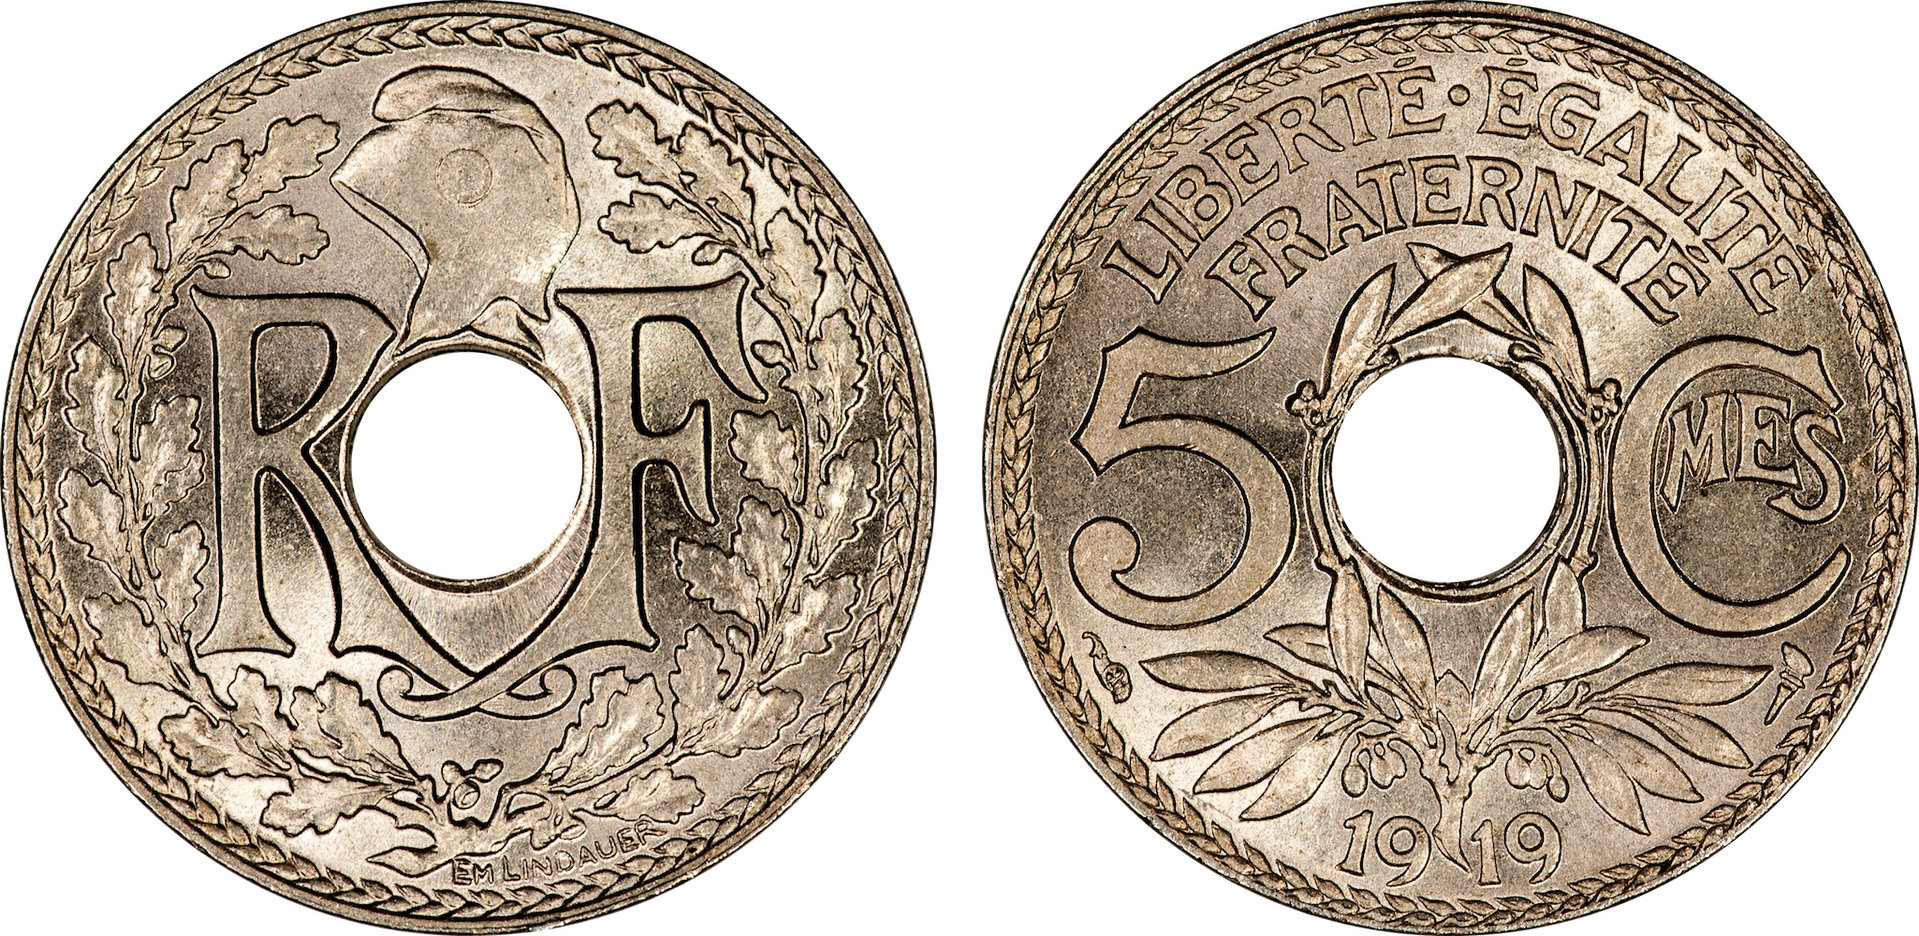 France - 1919 5 Centimes.jpg